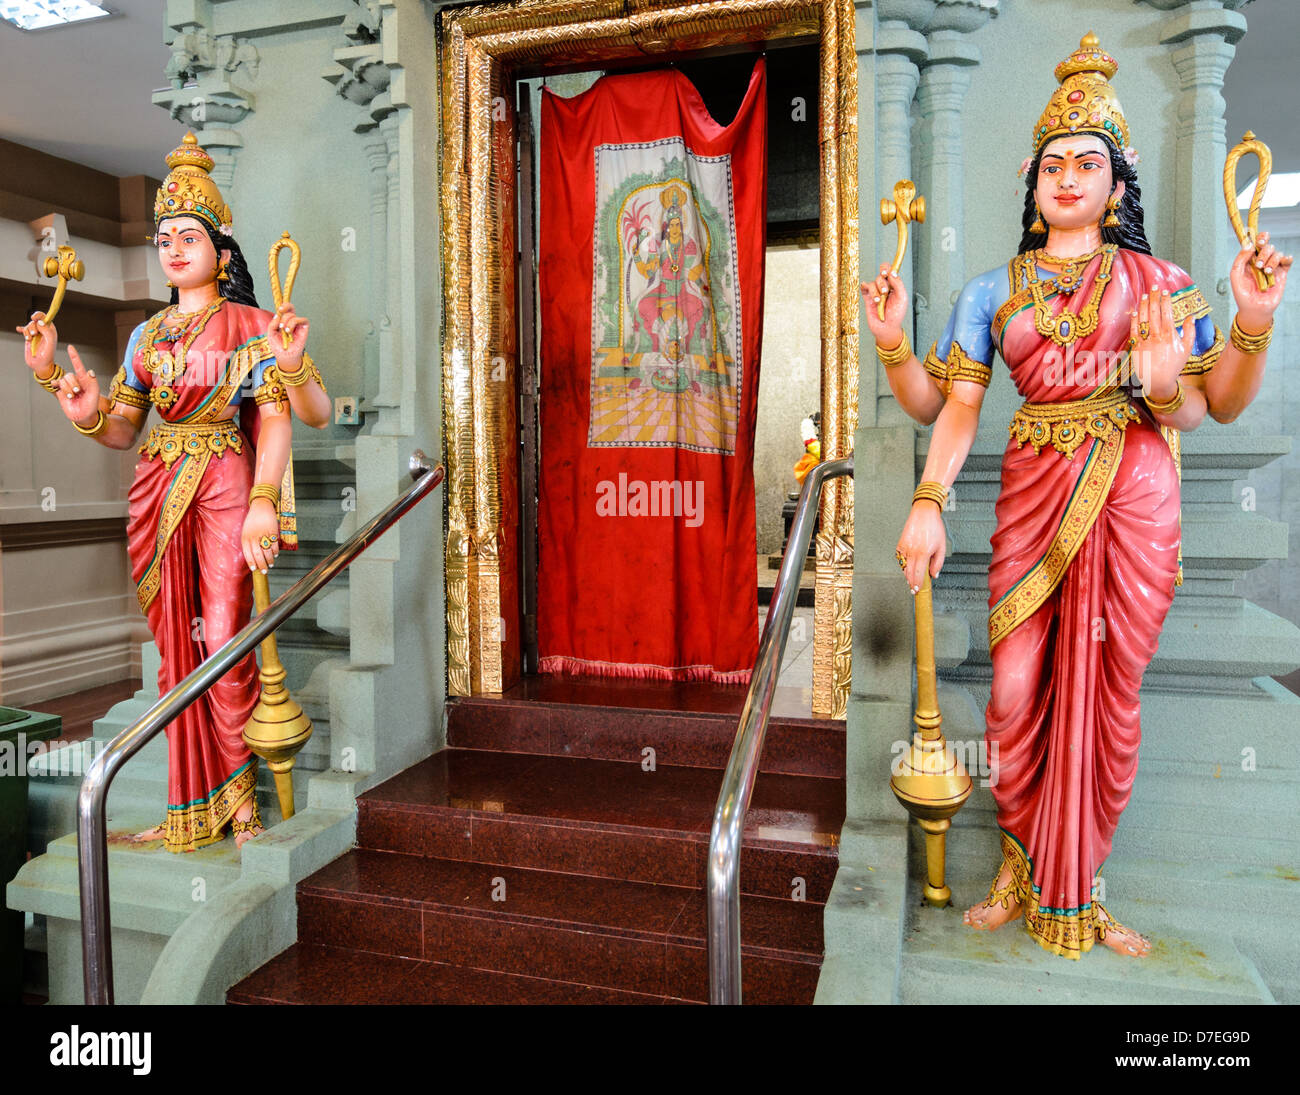 Vierarmige Gottheiten schützen das innere Heiligtum der einen Hindu-Tempel. Stockfoto